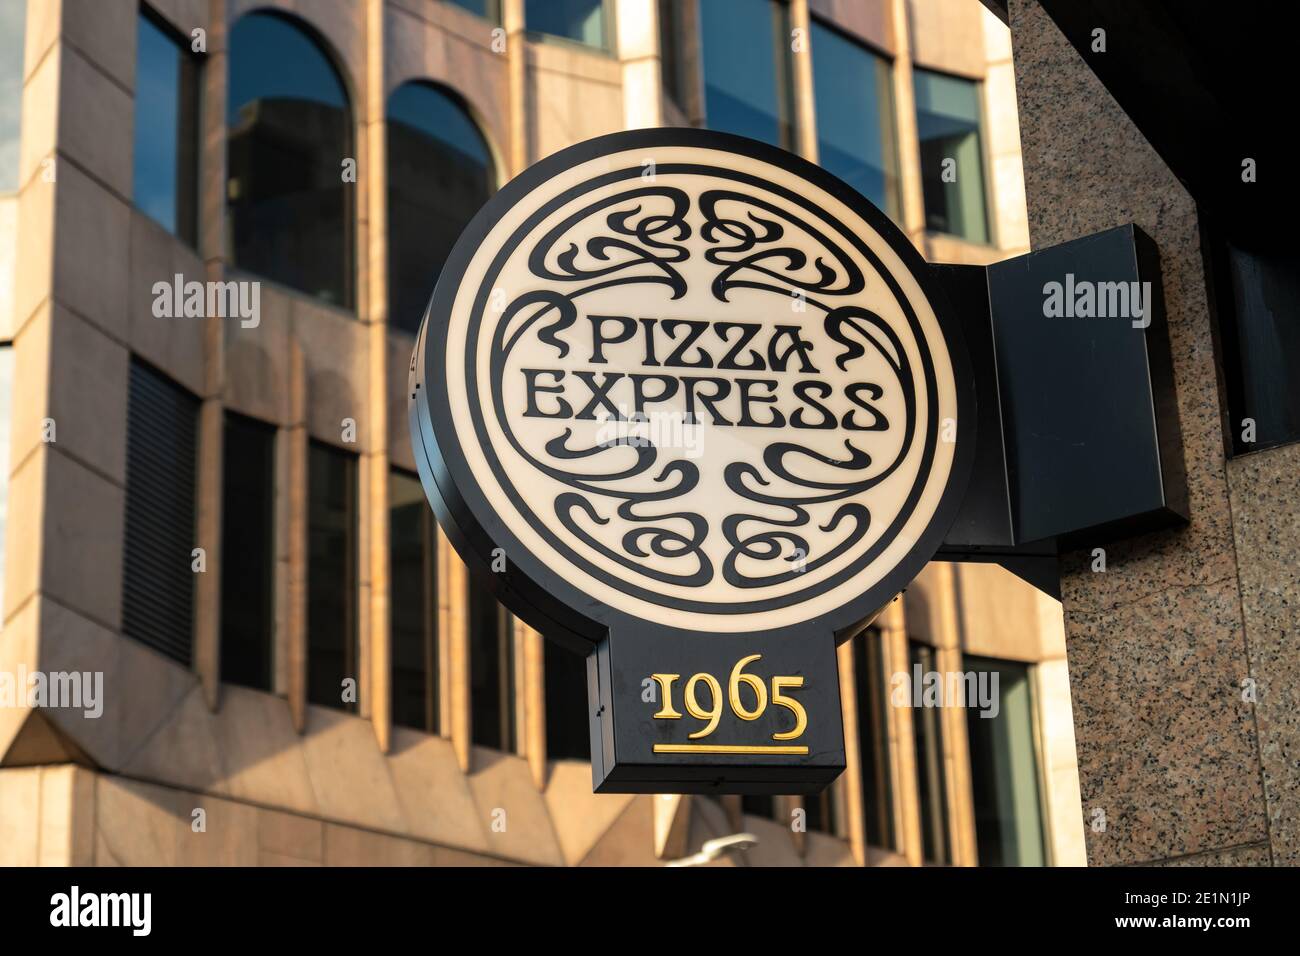 Londres - janvier 2021 : logo Pizza Express. Une grande chaîne de restaurants de pizza britannique Banque D'Images